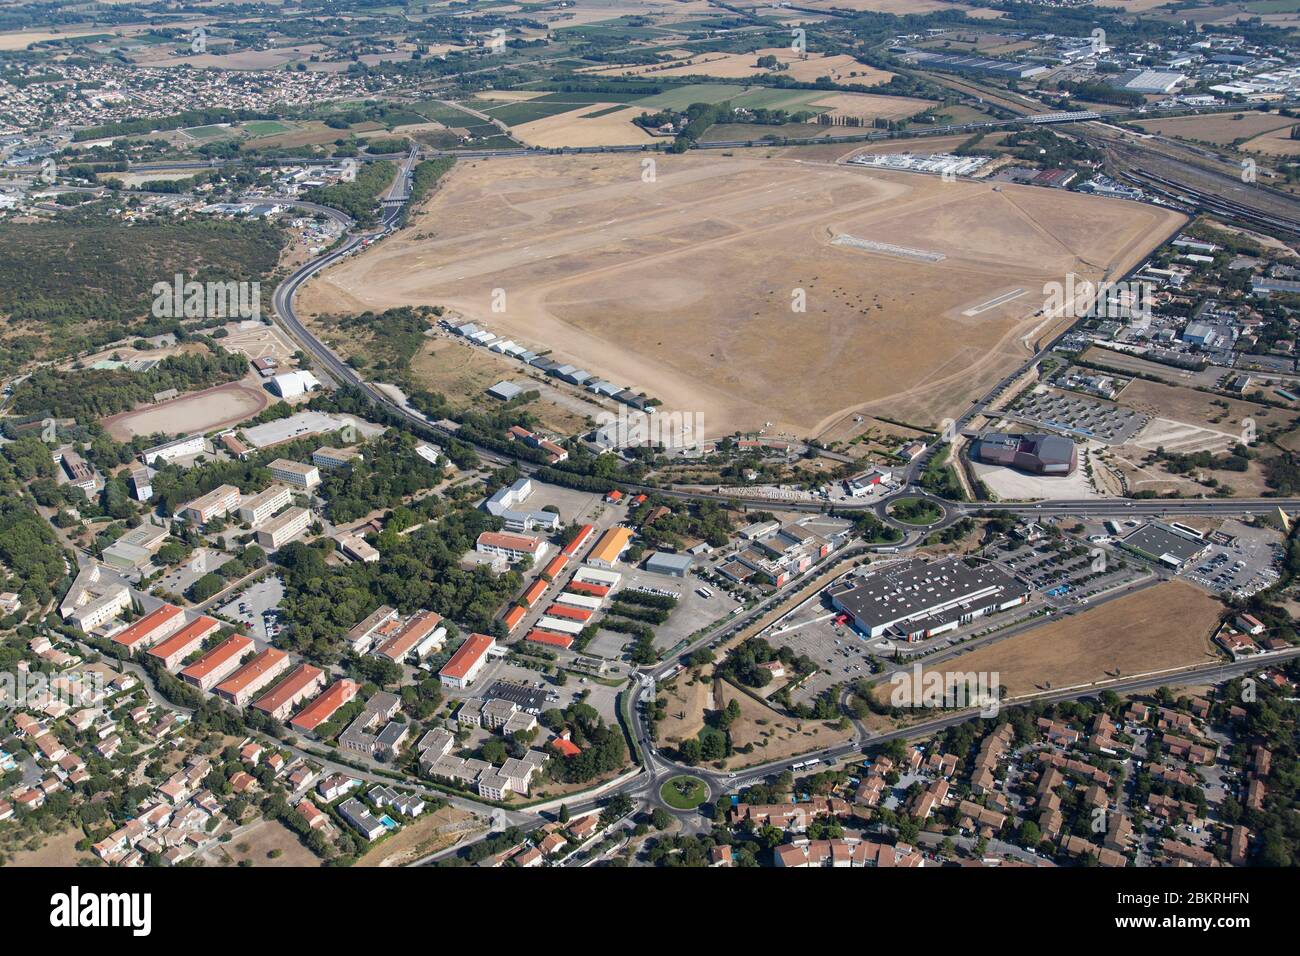 Francia, Gard, Nimes, aeródromo de Courbessac (vista aérea) Foto de stock